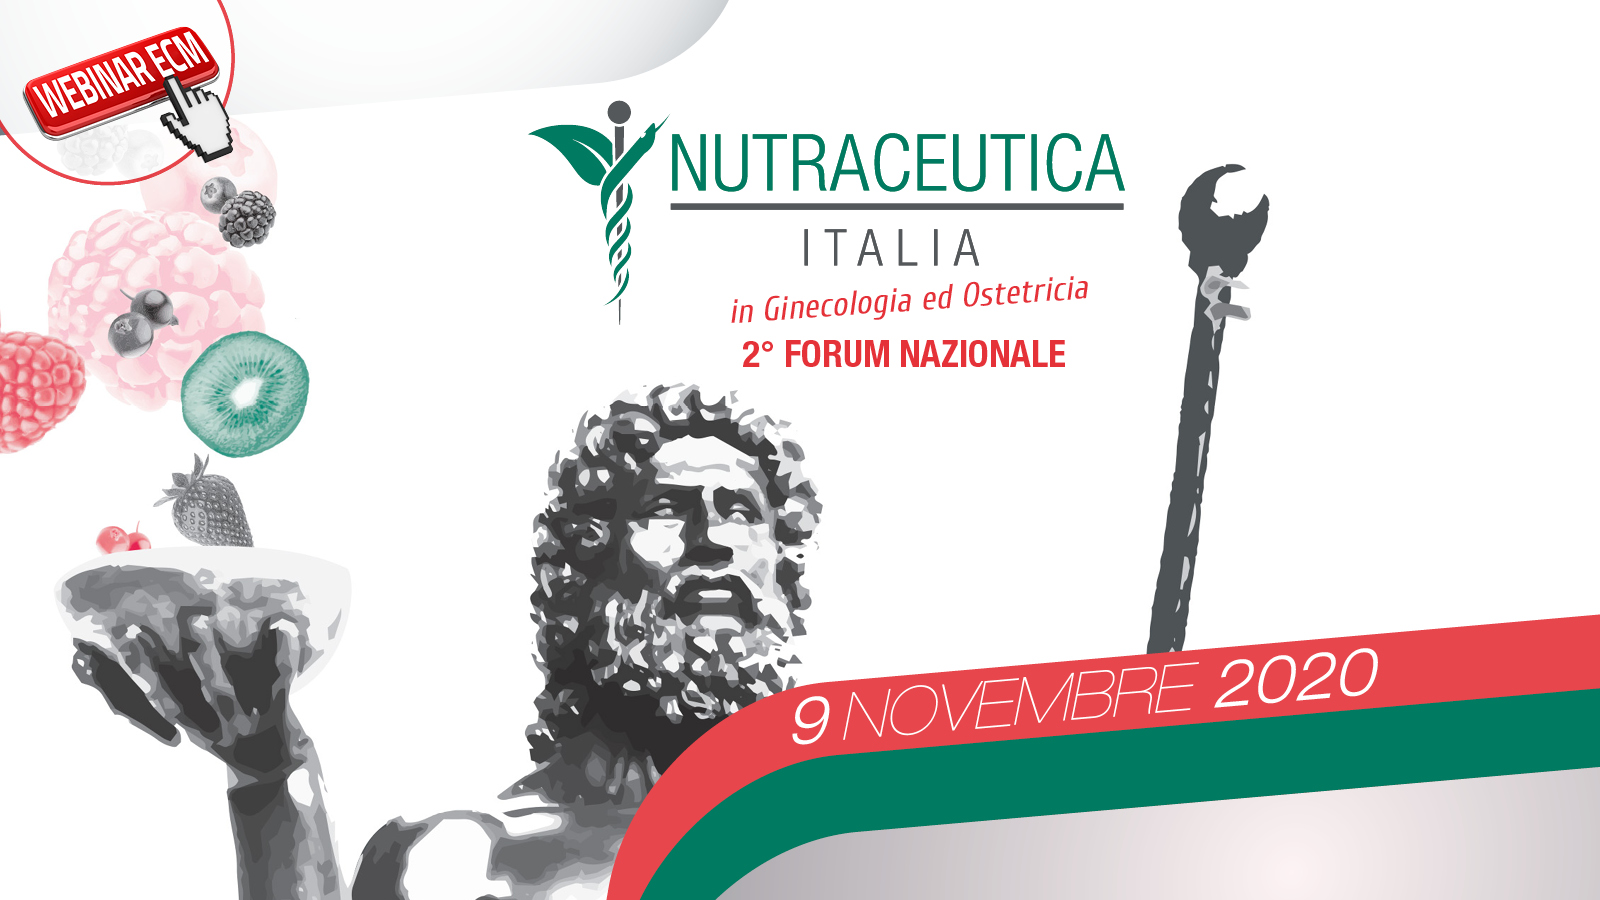 Nutraceutica Italia – in ginecologia ed ostetricia